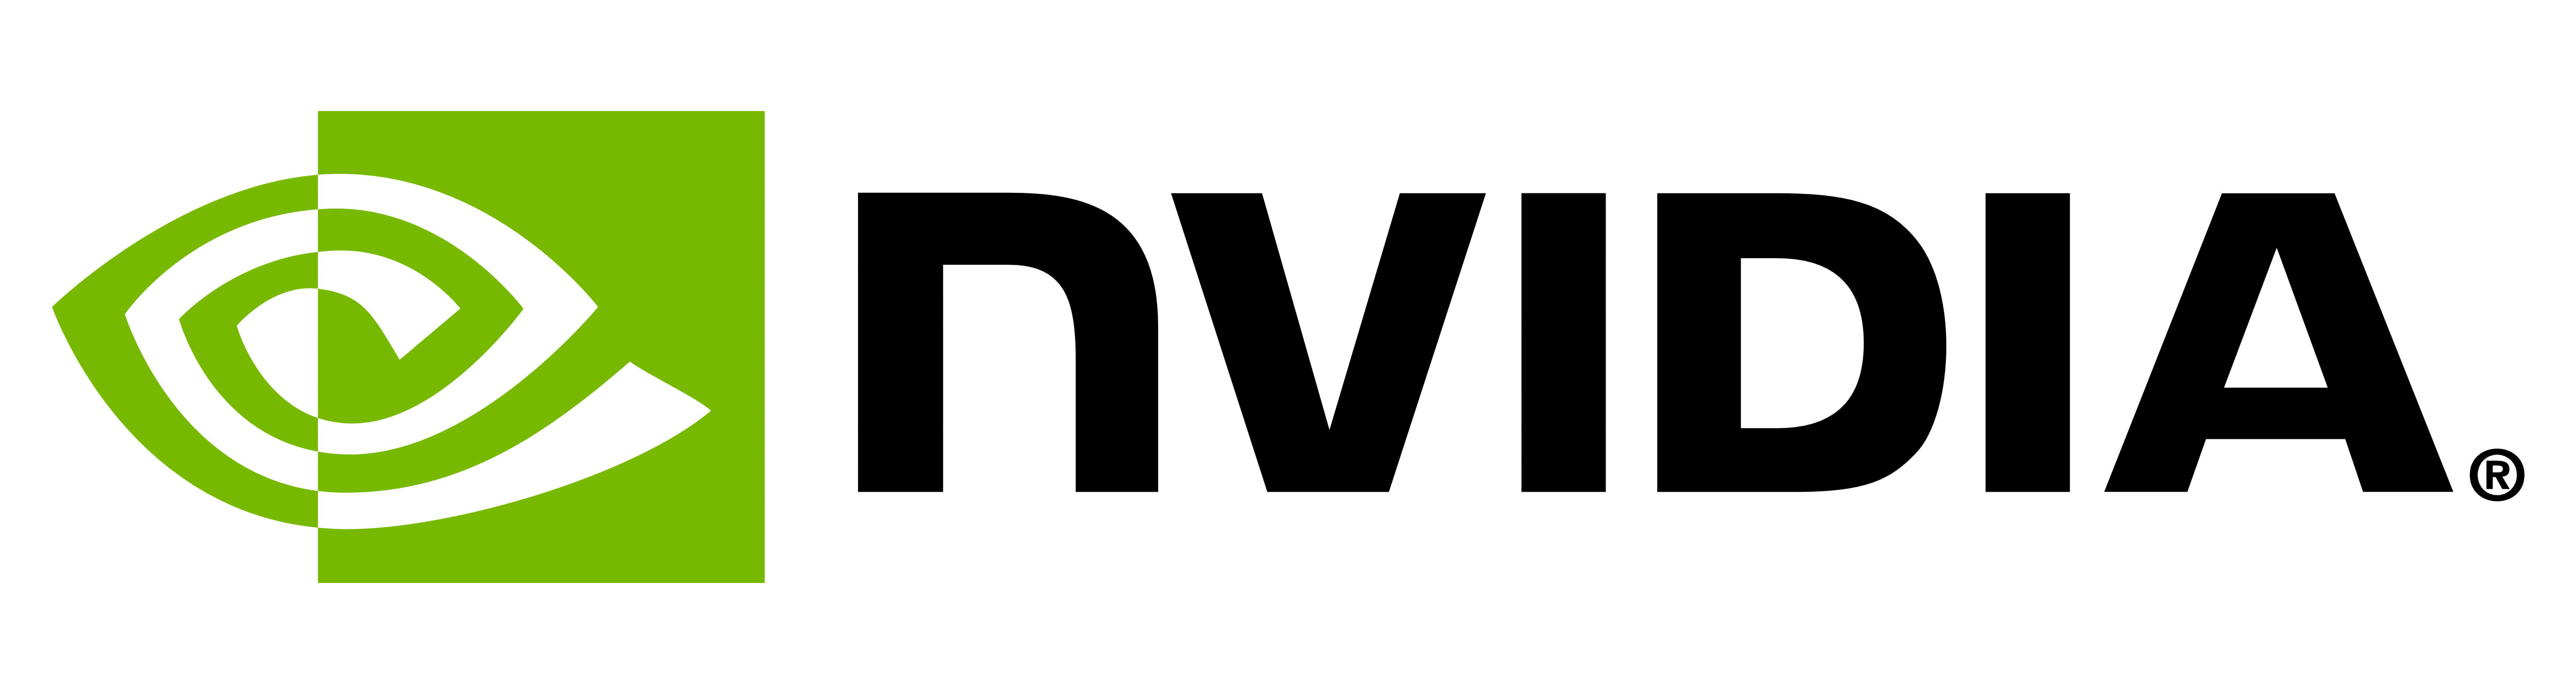 Signification du logo et du symbole NVIDIA | histoire et évolution